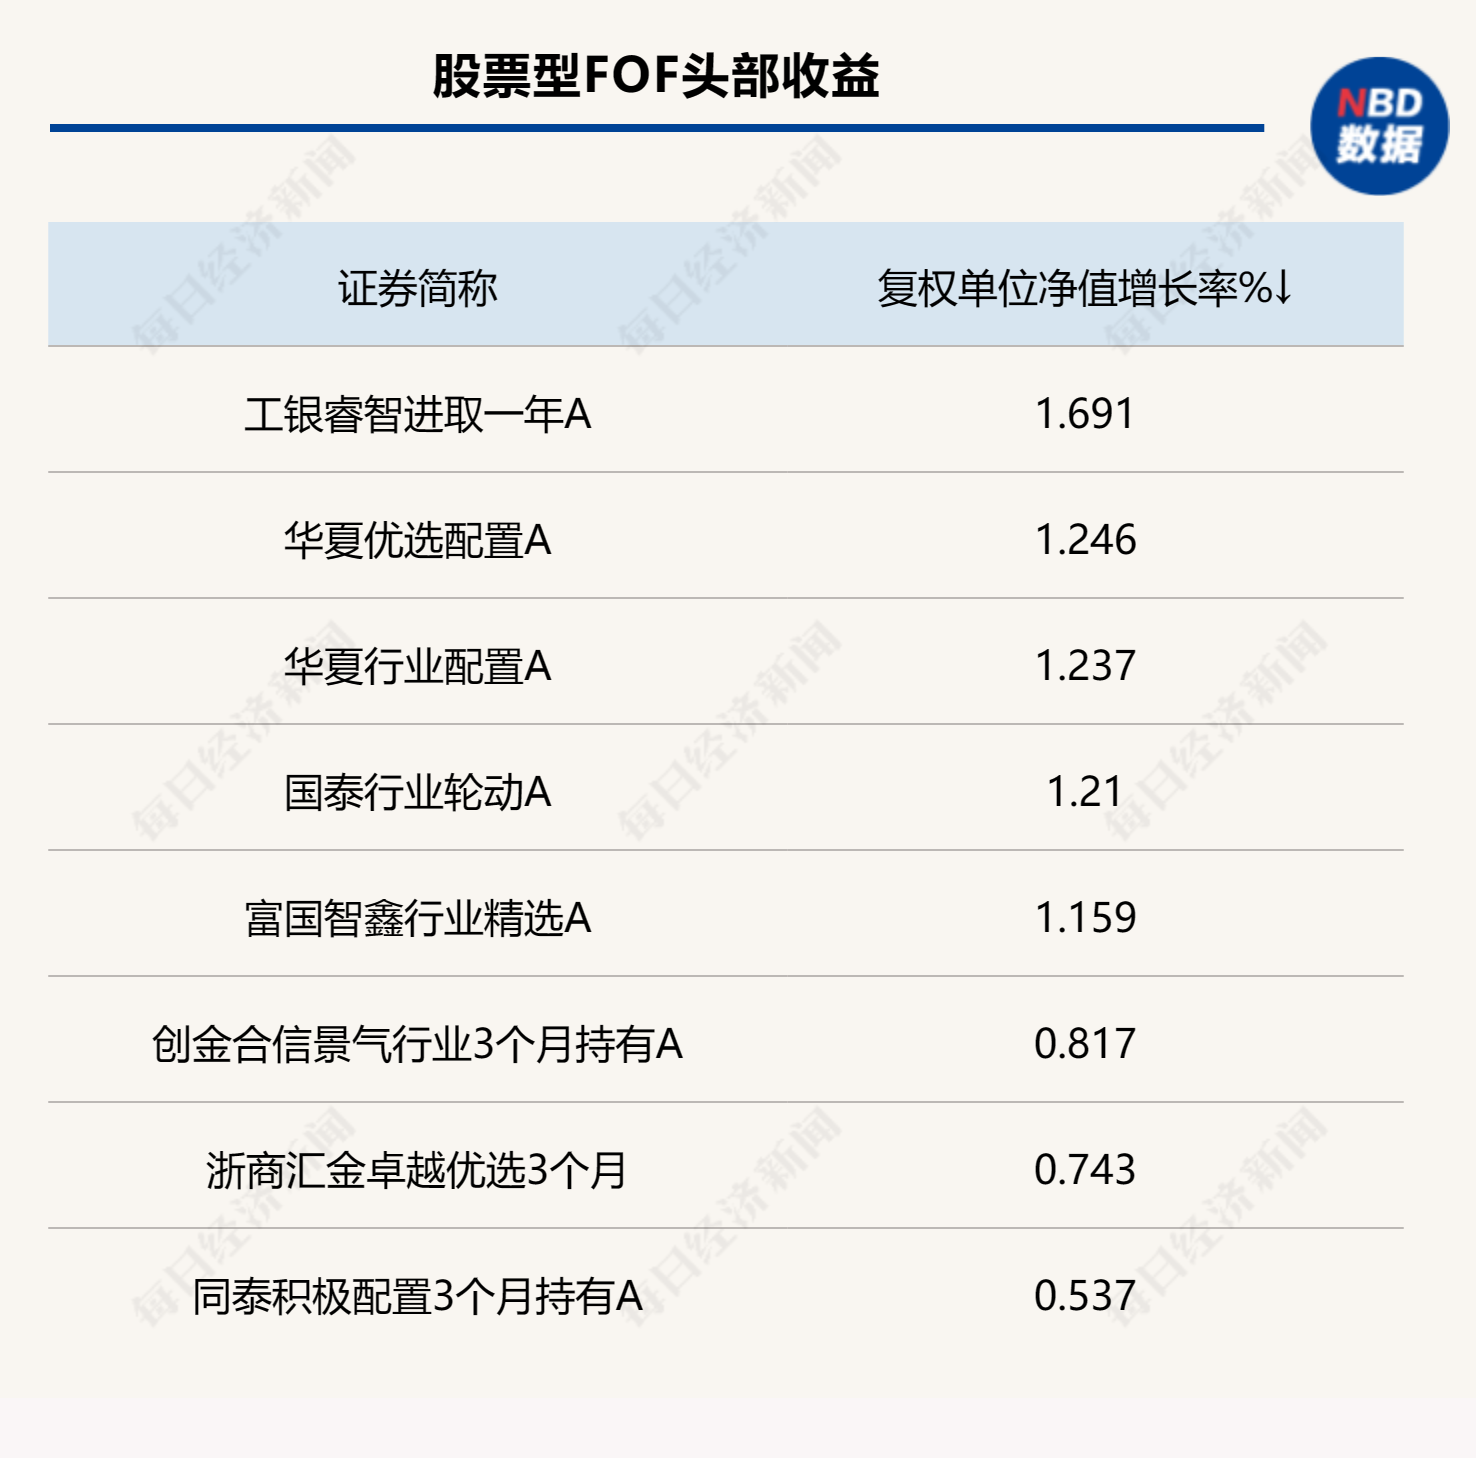 中国fof基金排名_中国排名前十基金_国内基金排名